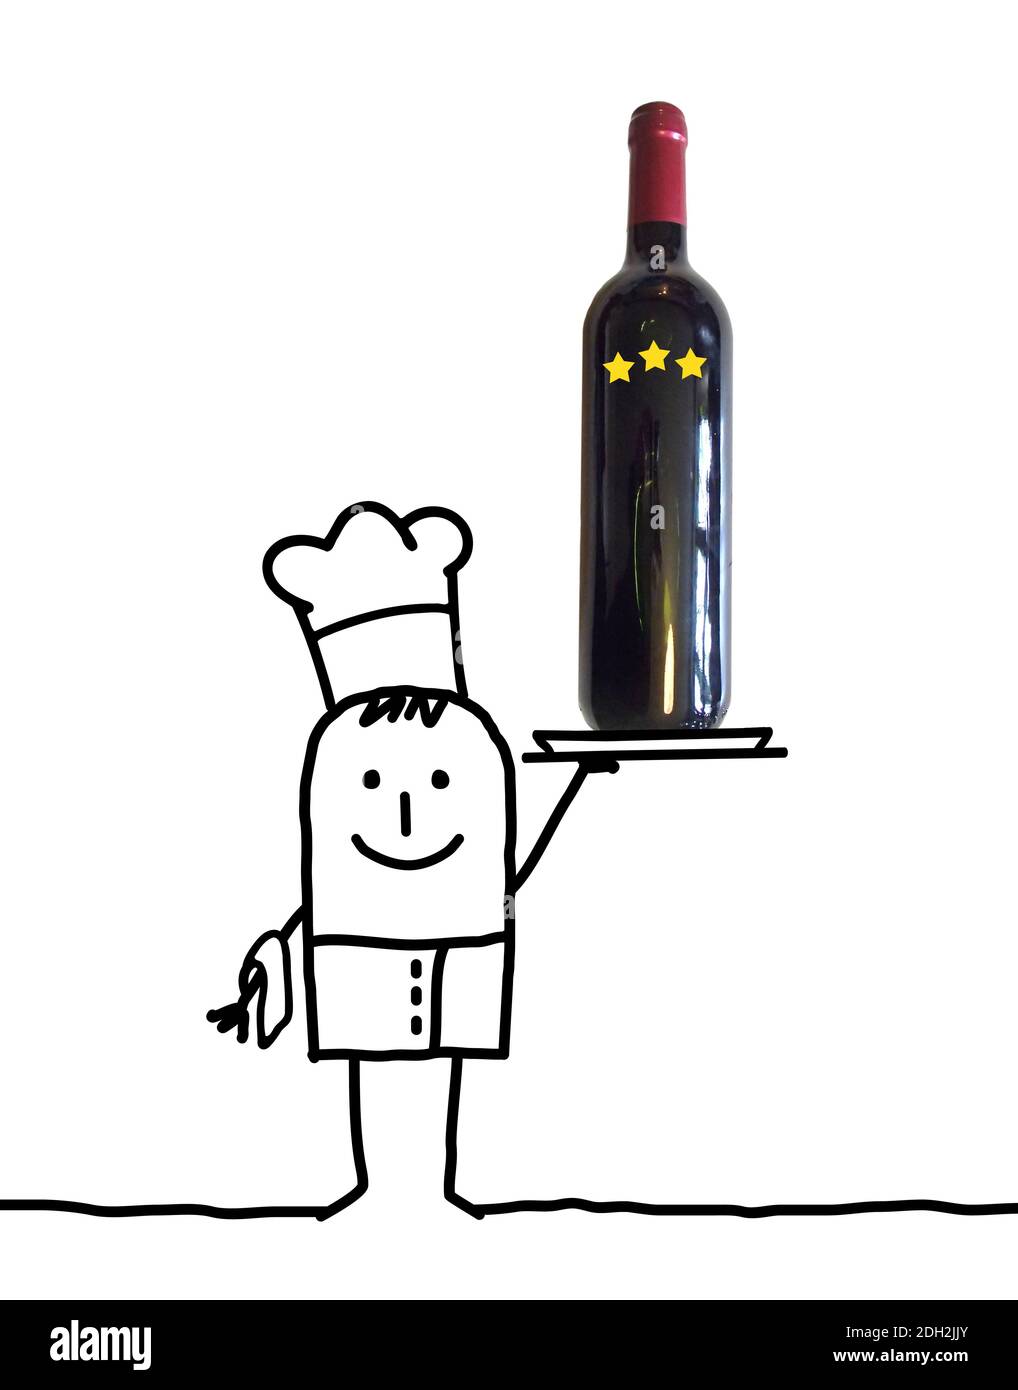 Handgezeichneter Cartoon Chef Kellner mit großer Flasche Wein In einem Tablett - Collage Stockfoto